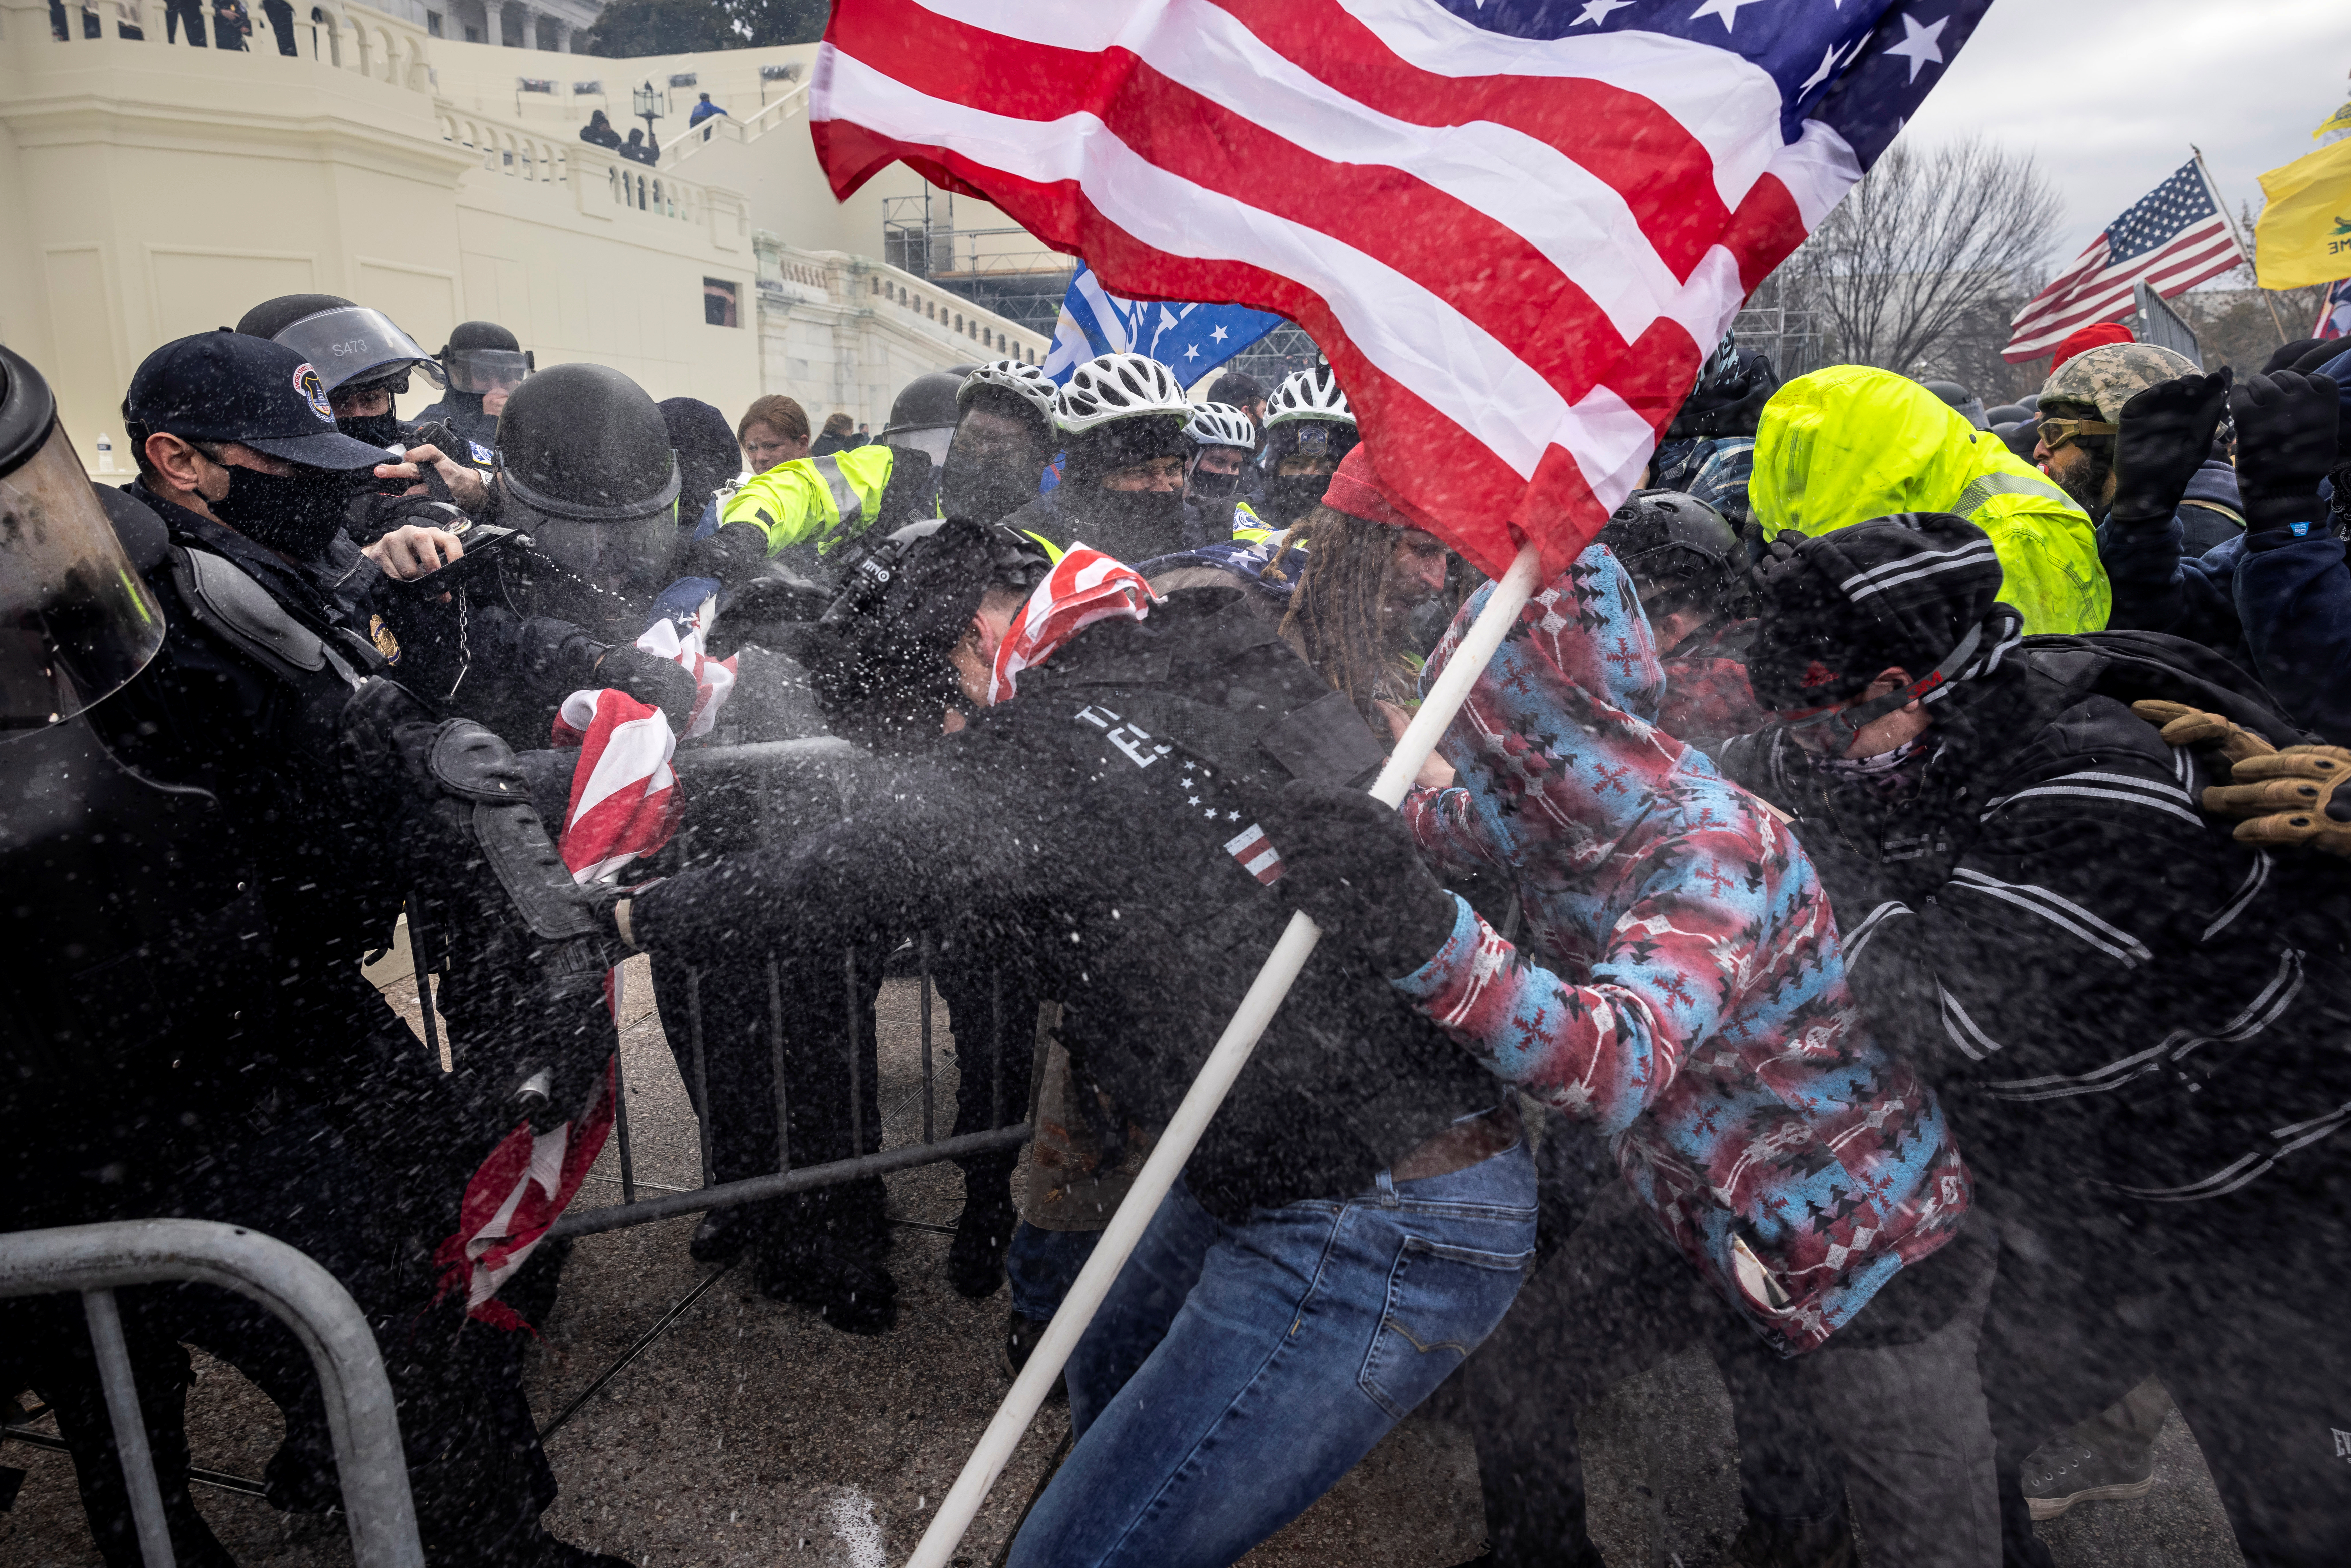 Los partidarios de Trump chocaron con la policía y las fuerzas de seguridad durante el asalto al Capitolio del 6 de enero de 2021.